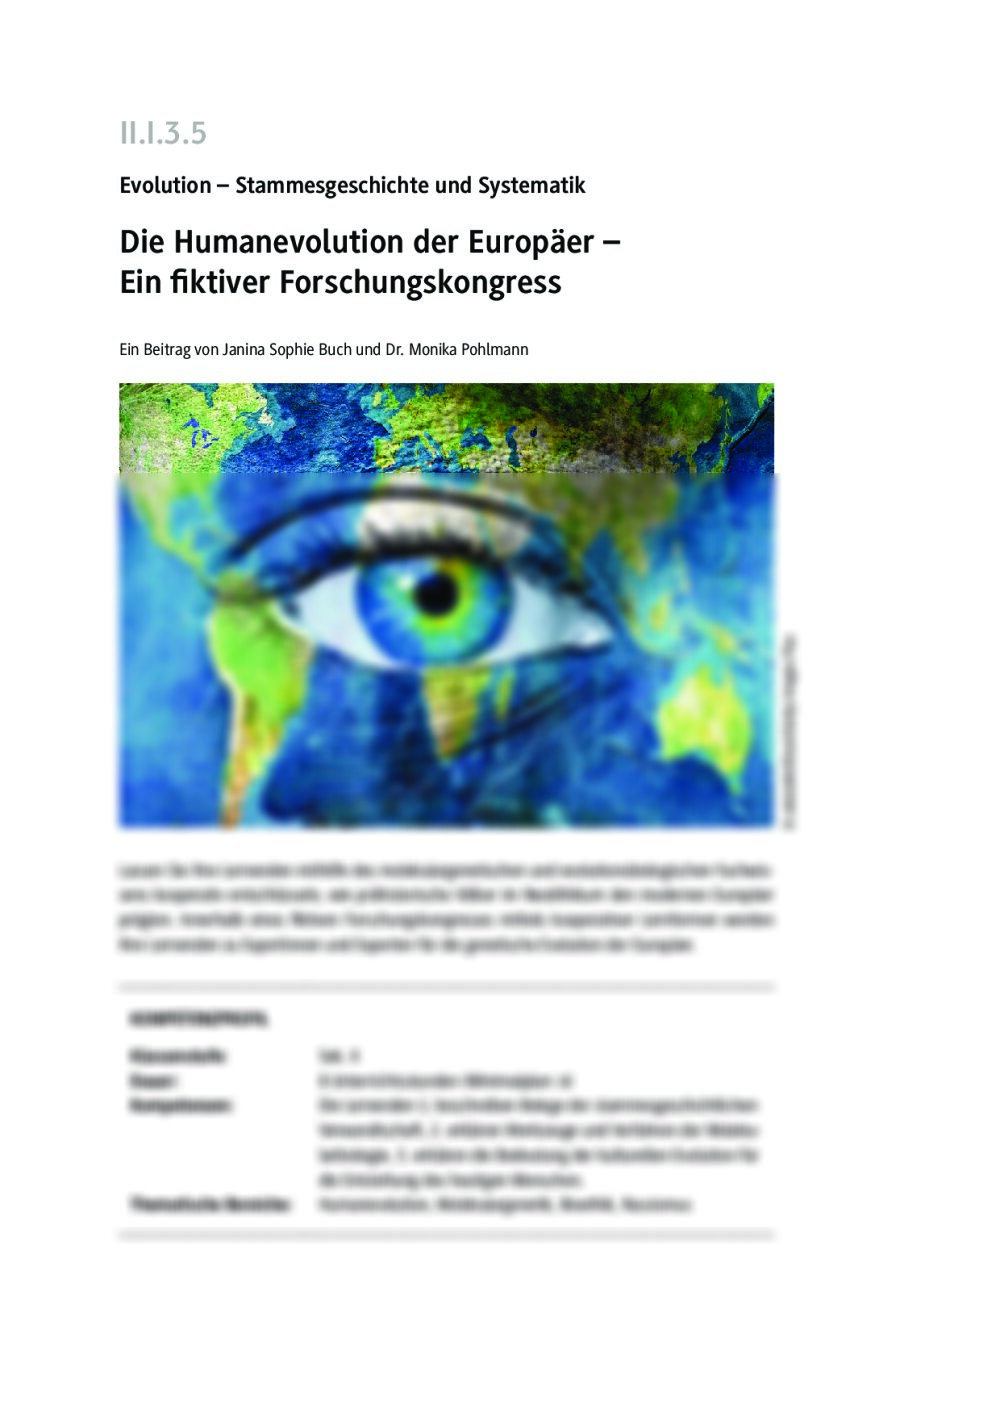 Die Humanevolution der Europäer - Seite 1